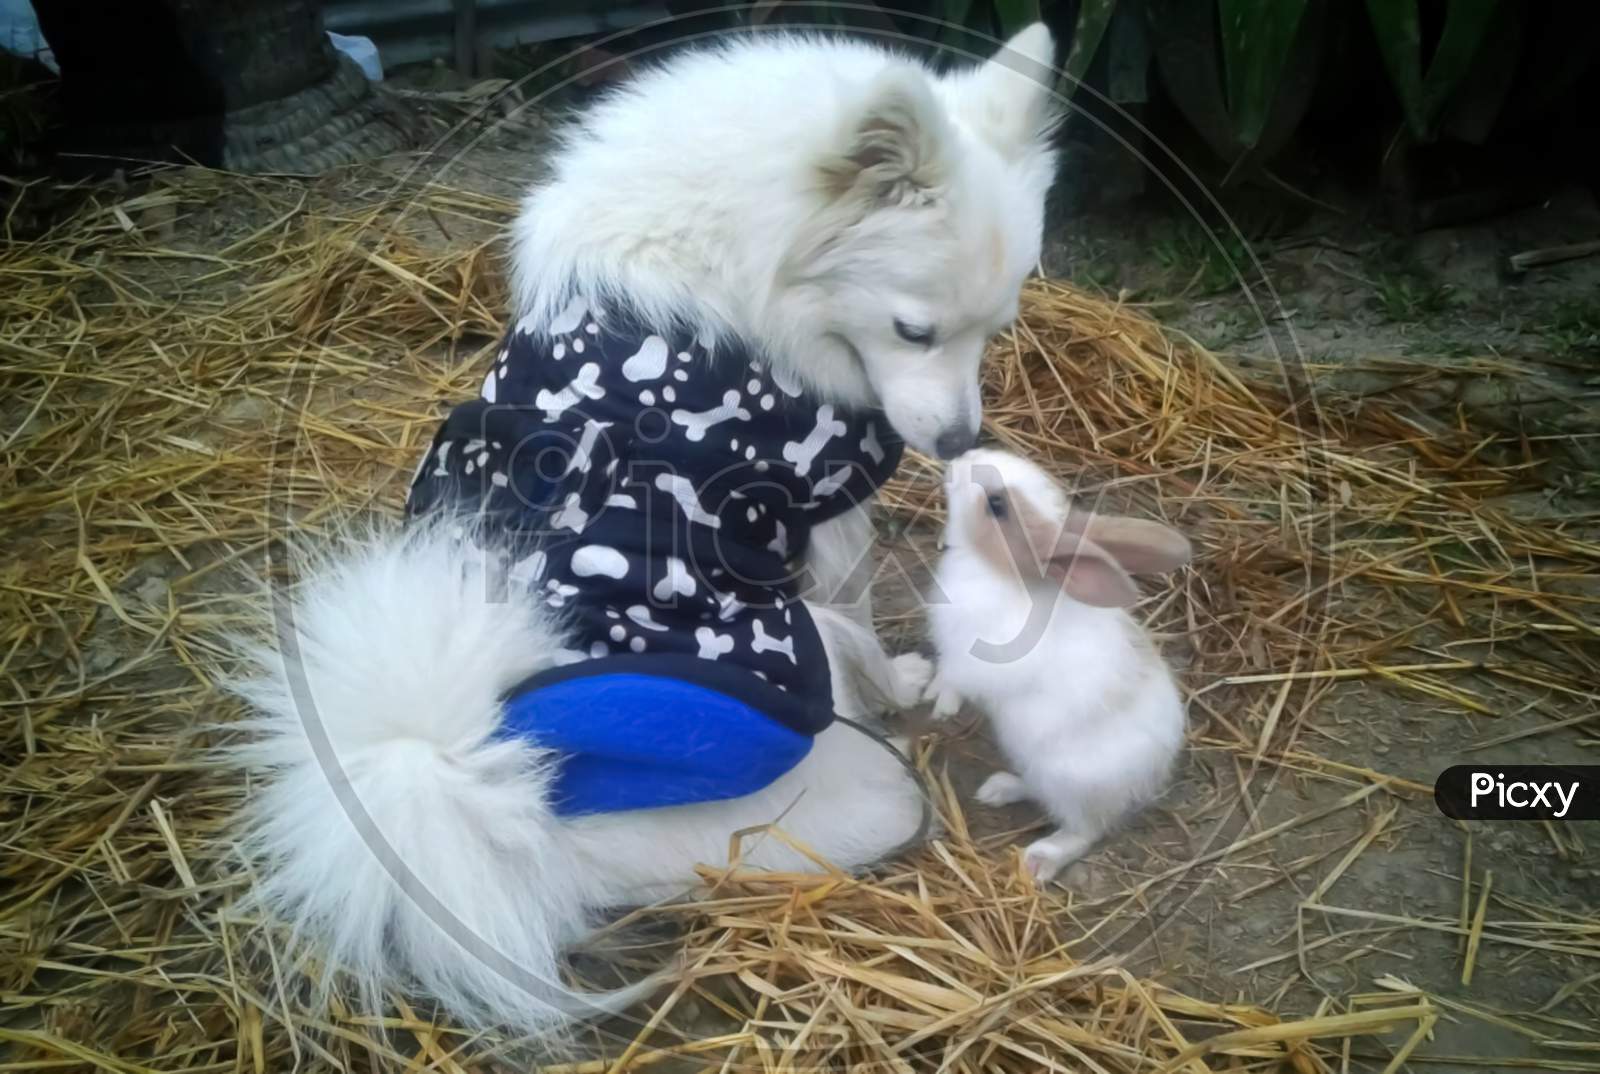 A dog kissing a rabbit